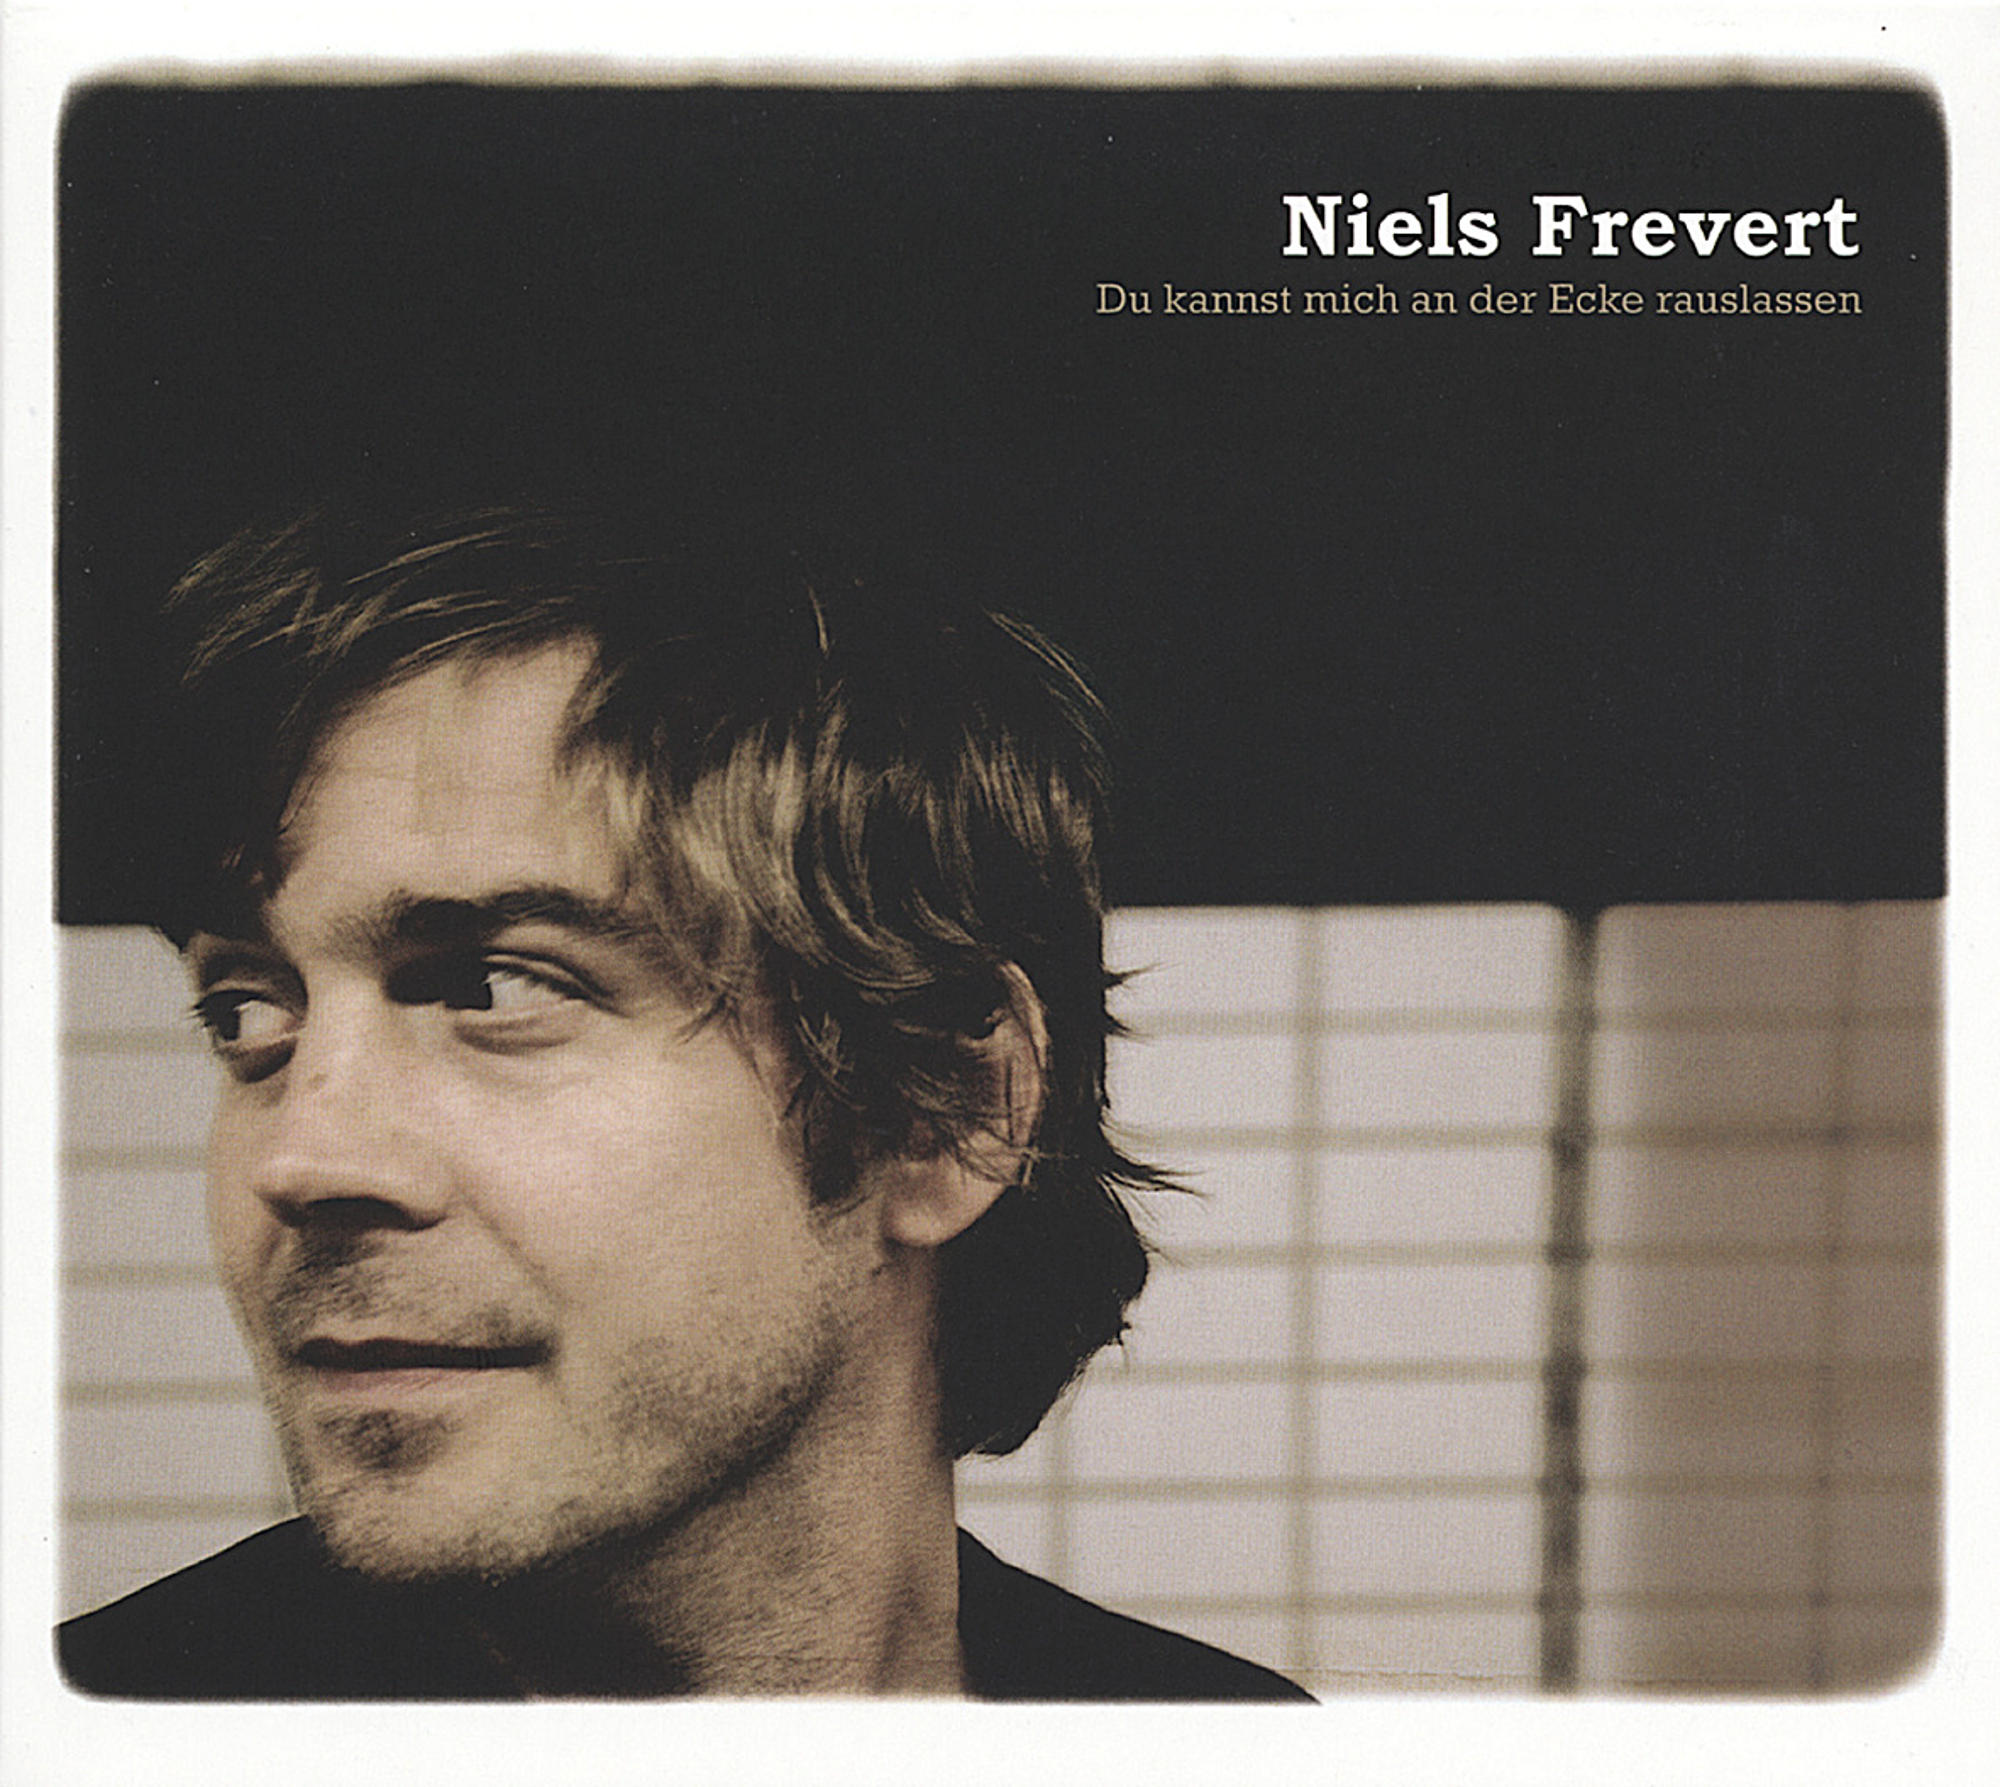 Niels Frevert - Du kannst Ecke - an (CD) der rauslassen mich